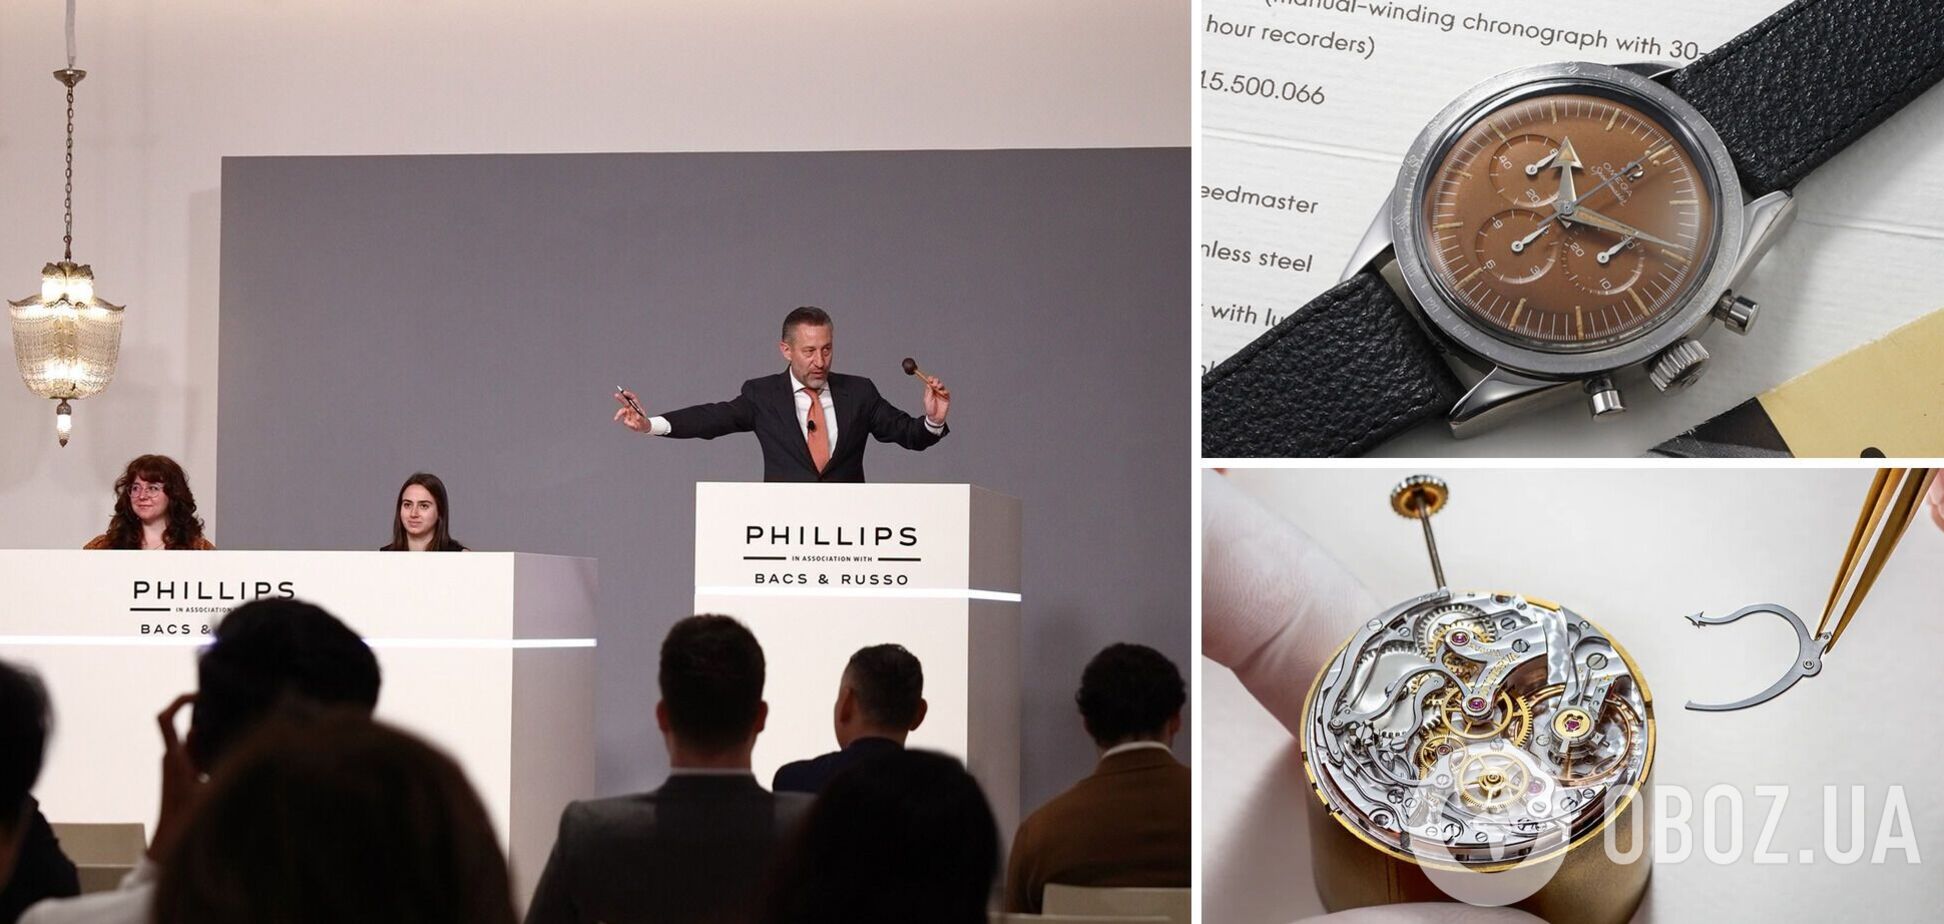 Omega купила власний колекційний годинник за $3,4 млн, а він виявився підробкою: як так вийшло